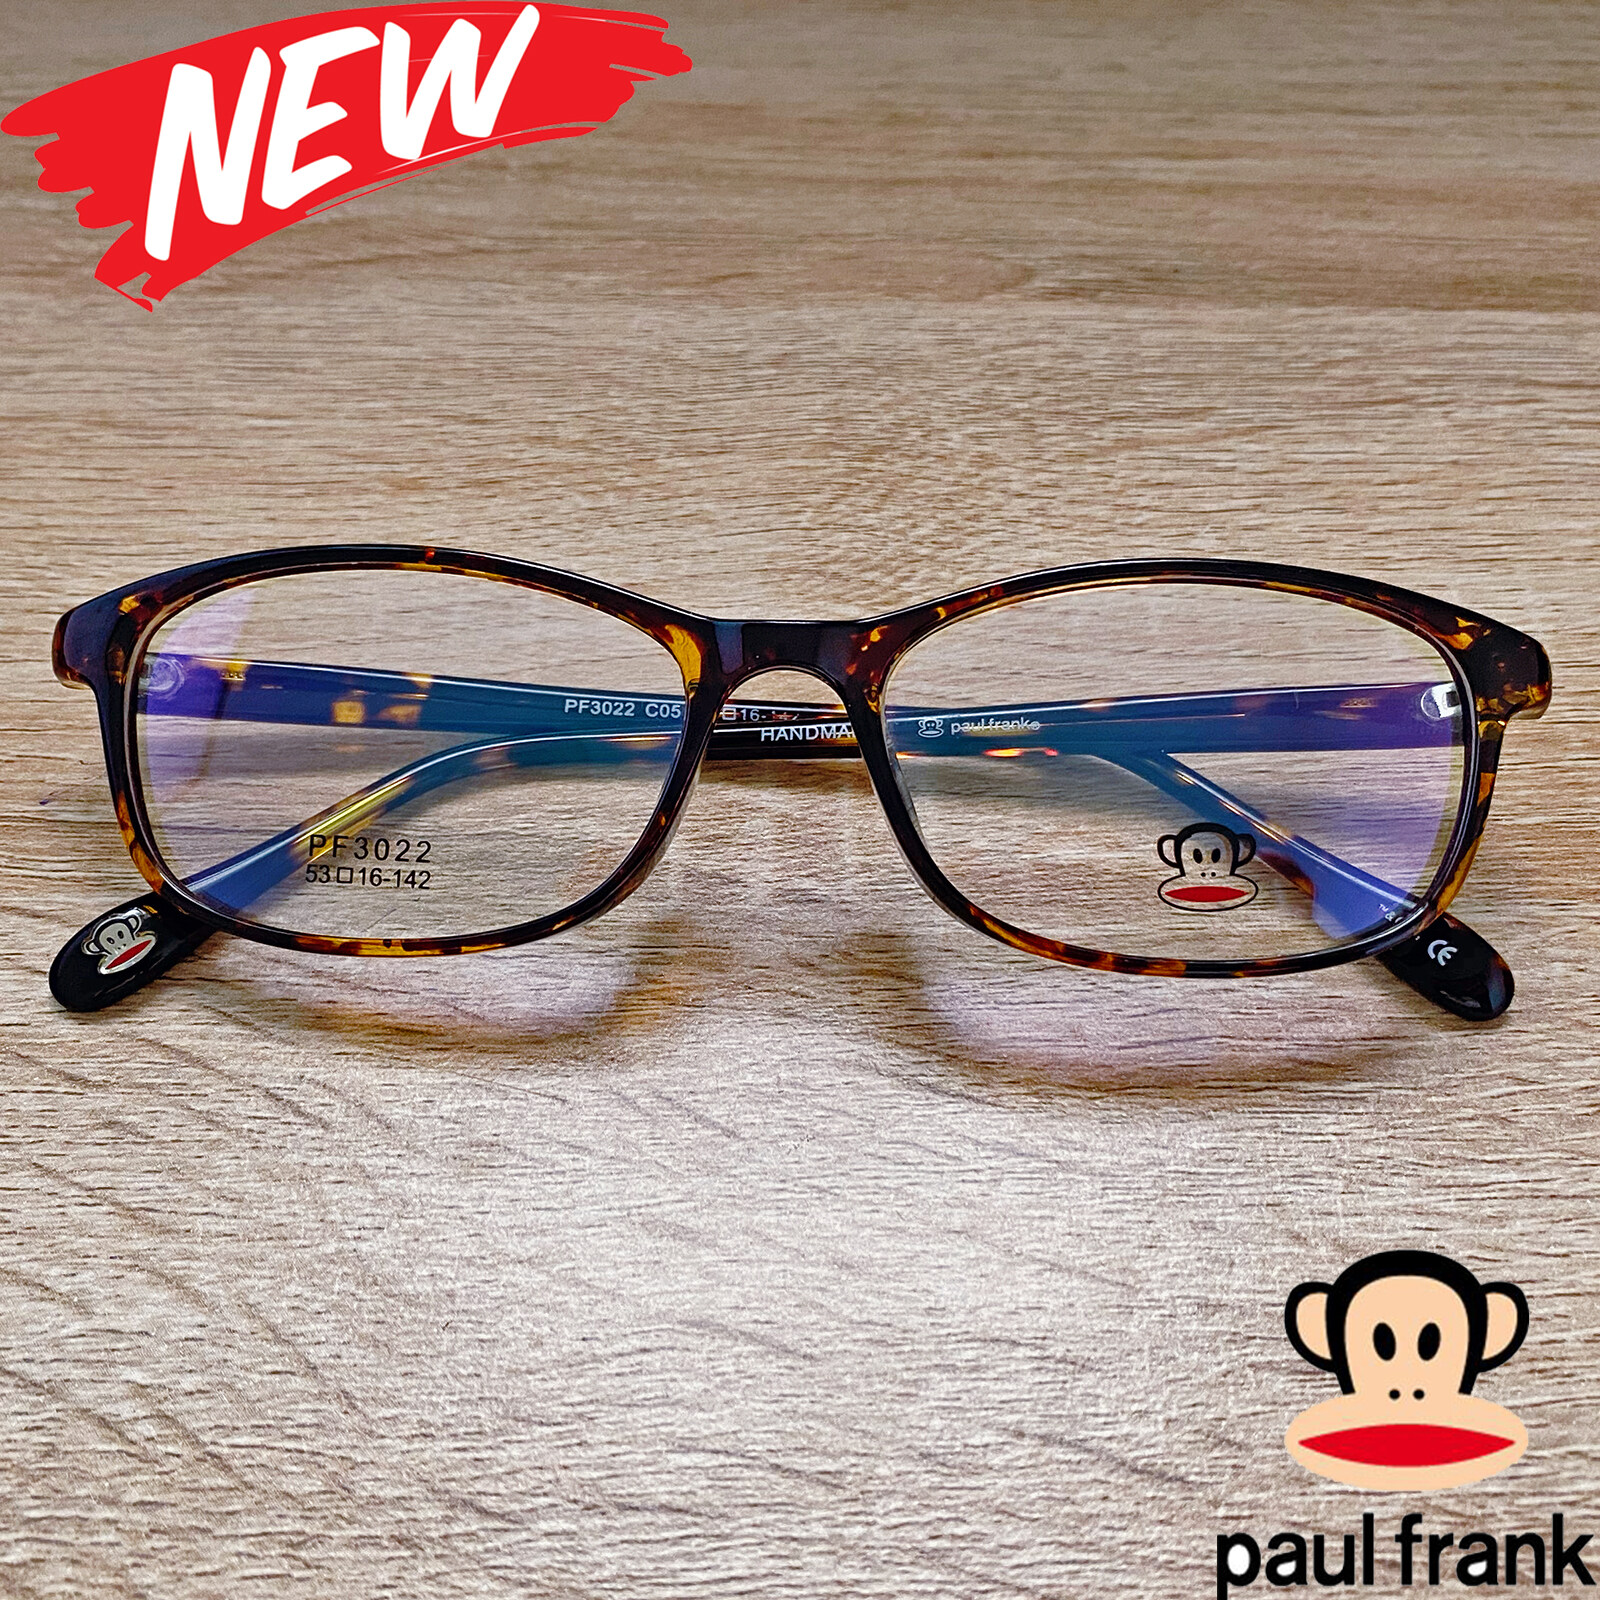 แว่นตาสำหรับตัดเลนส์ กรอบแว่นตา Fashion รุ่น Paul Frank 3022 สีน้ำตาลกละ กรอบเต็ม ทรงรี ขาข้อต่อ TR90 รับตัดเลนส์ทุกชนิด ราคาถูก